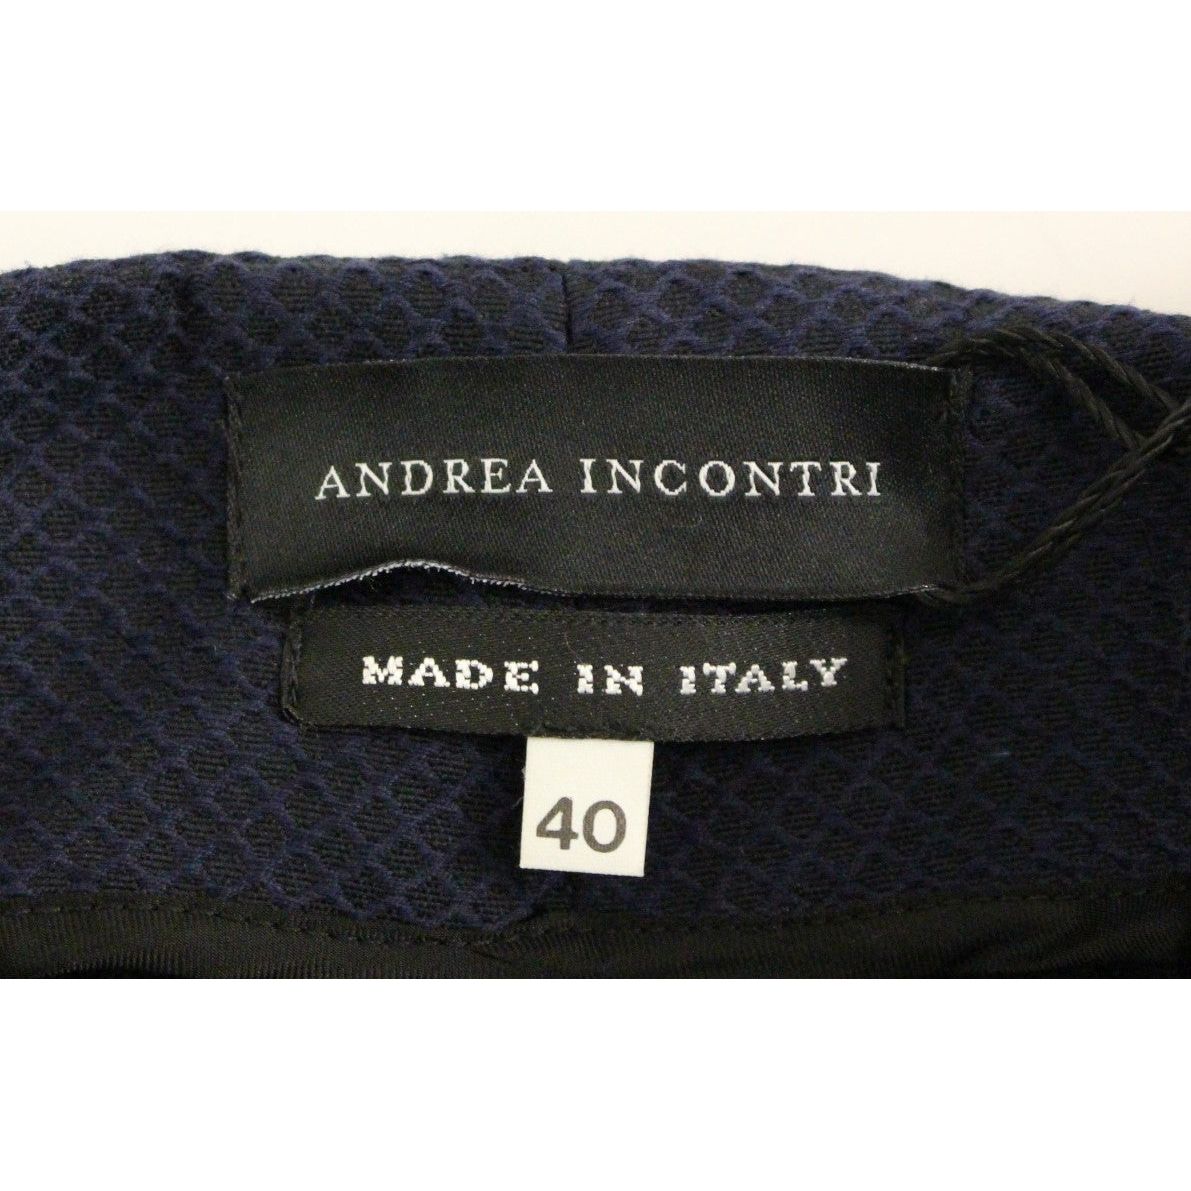 Andrea Incontri Chic Cropped Blue Pants - Exquisite Craftsmanship blue-cropped-cotton-pants 148735-blue-cropped-cotton-pants-5.jpg